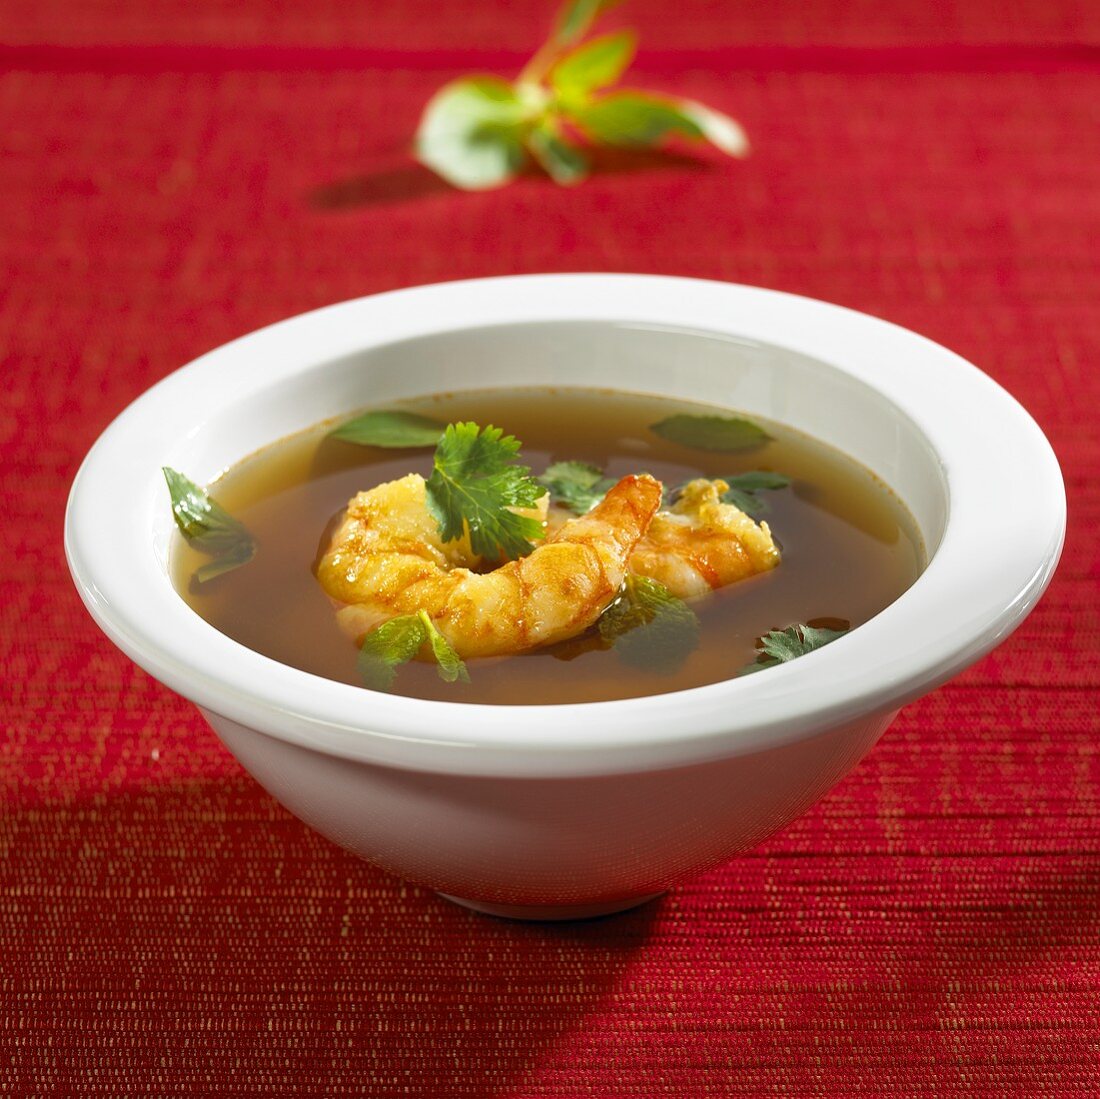 Tom Yum Suppe mit Garnelen (Thailand)